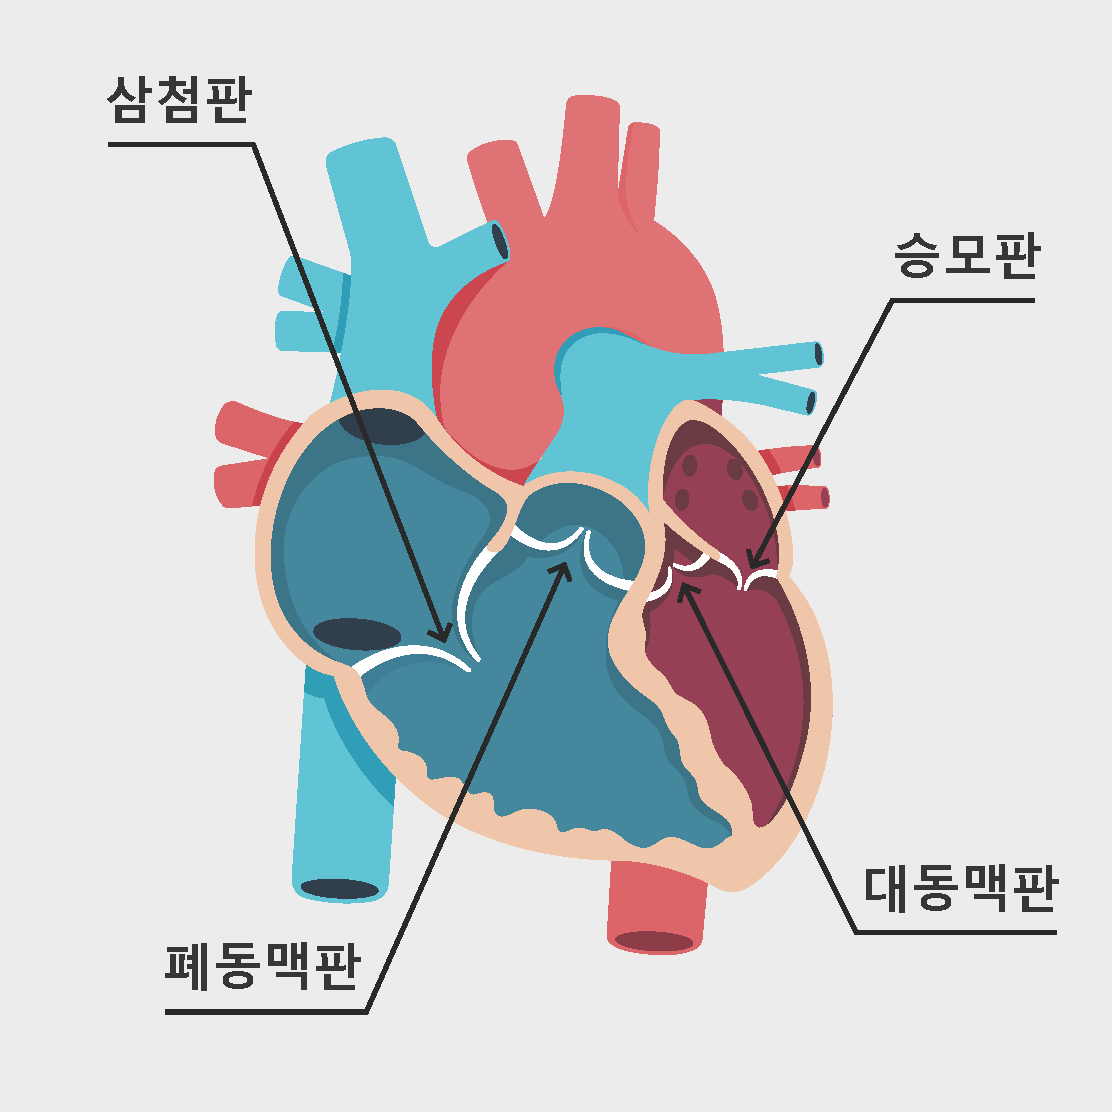 심장 판막 질환이란 무엇인가요?